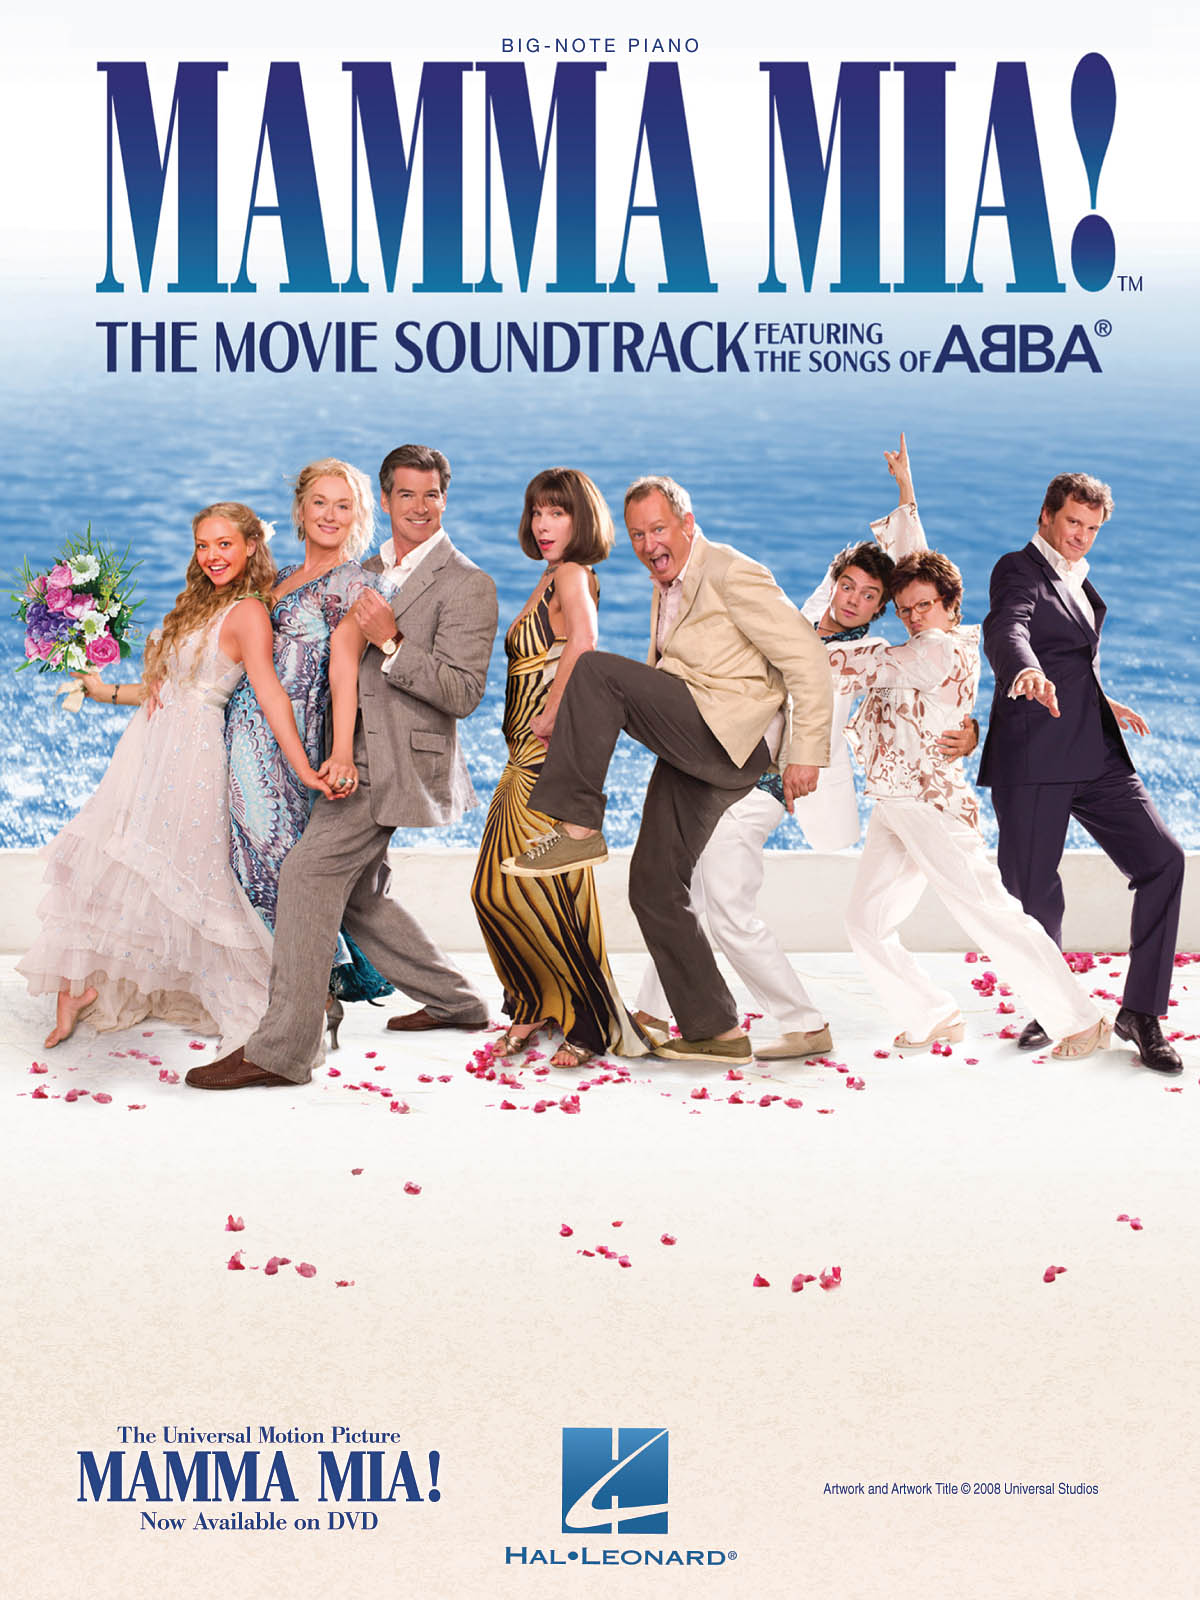 Mamma Mia (abba) Movie Soundtrack Big Note Piano Sheet Music Songbook